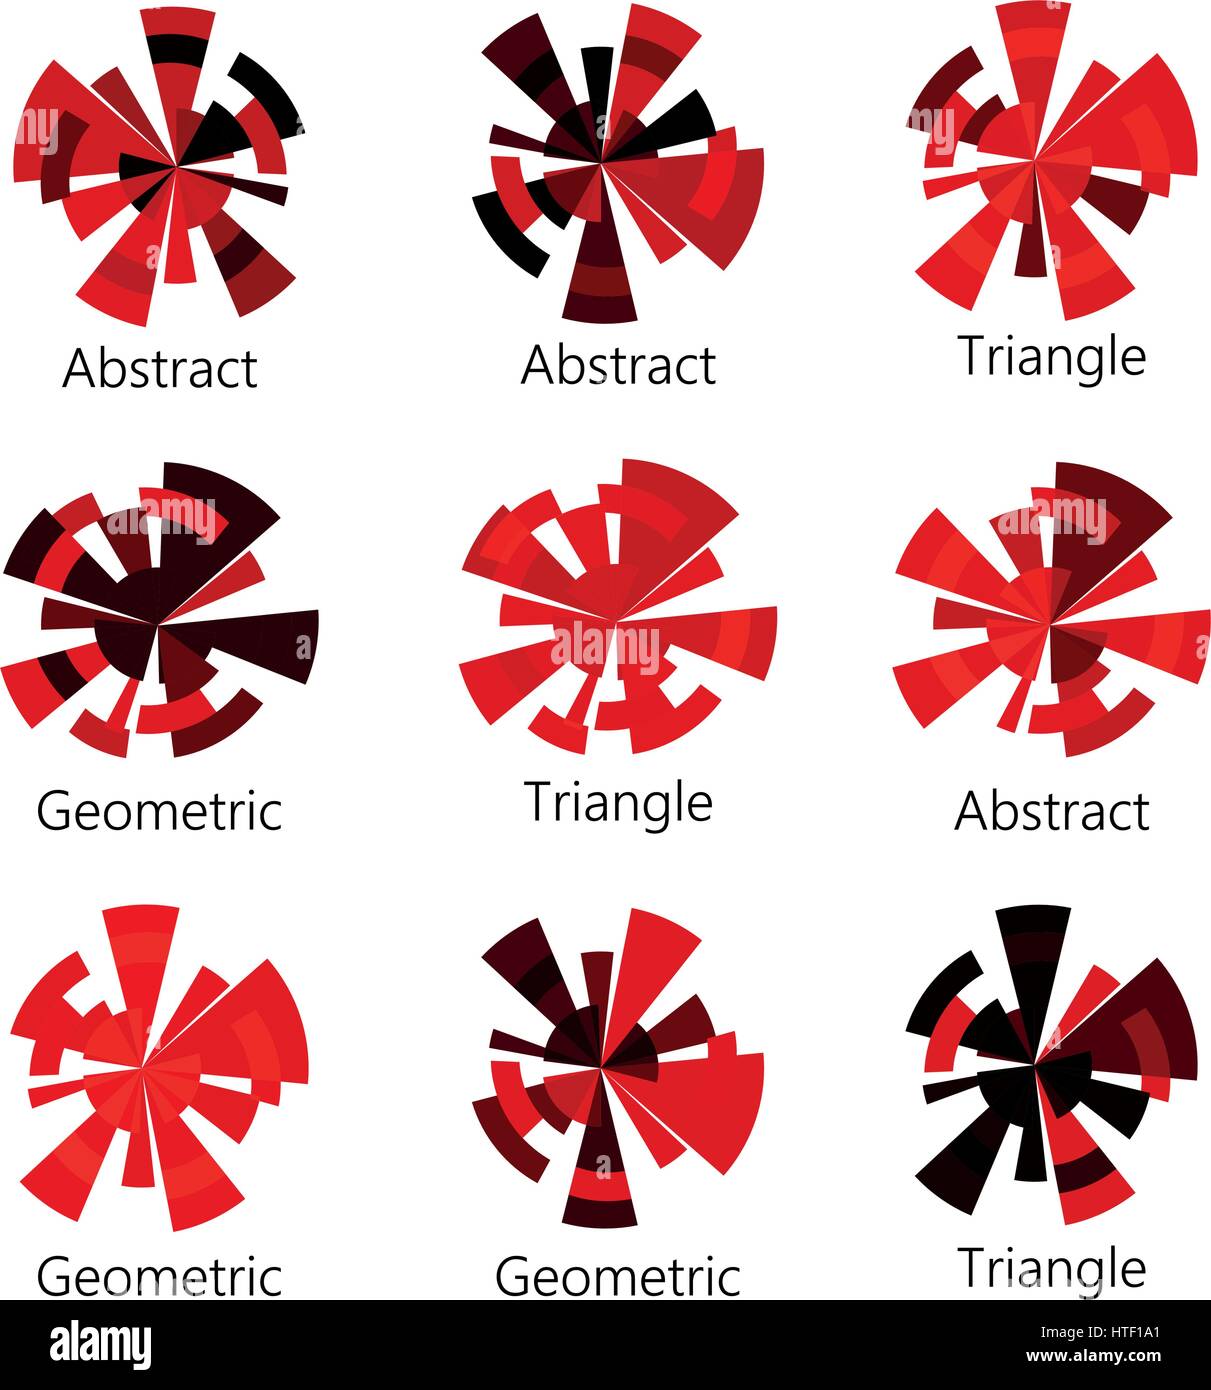 Résumé de l'ombre rouge isolé de forme circulaire de l'emblème de l'ensemble des triangles sur fond blanc, collection d'icônes schéma, les éléments de géométrie vector illustration Illustration de Vecteur